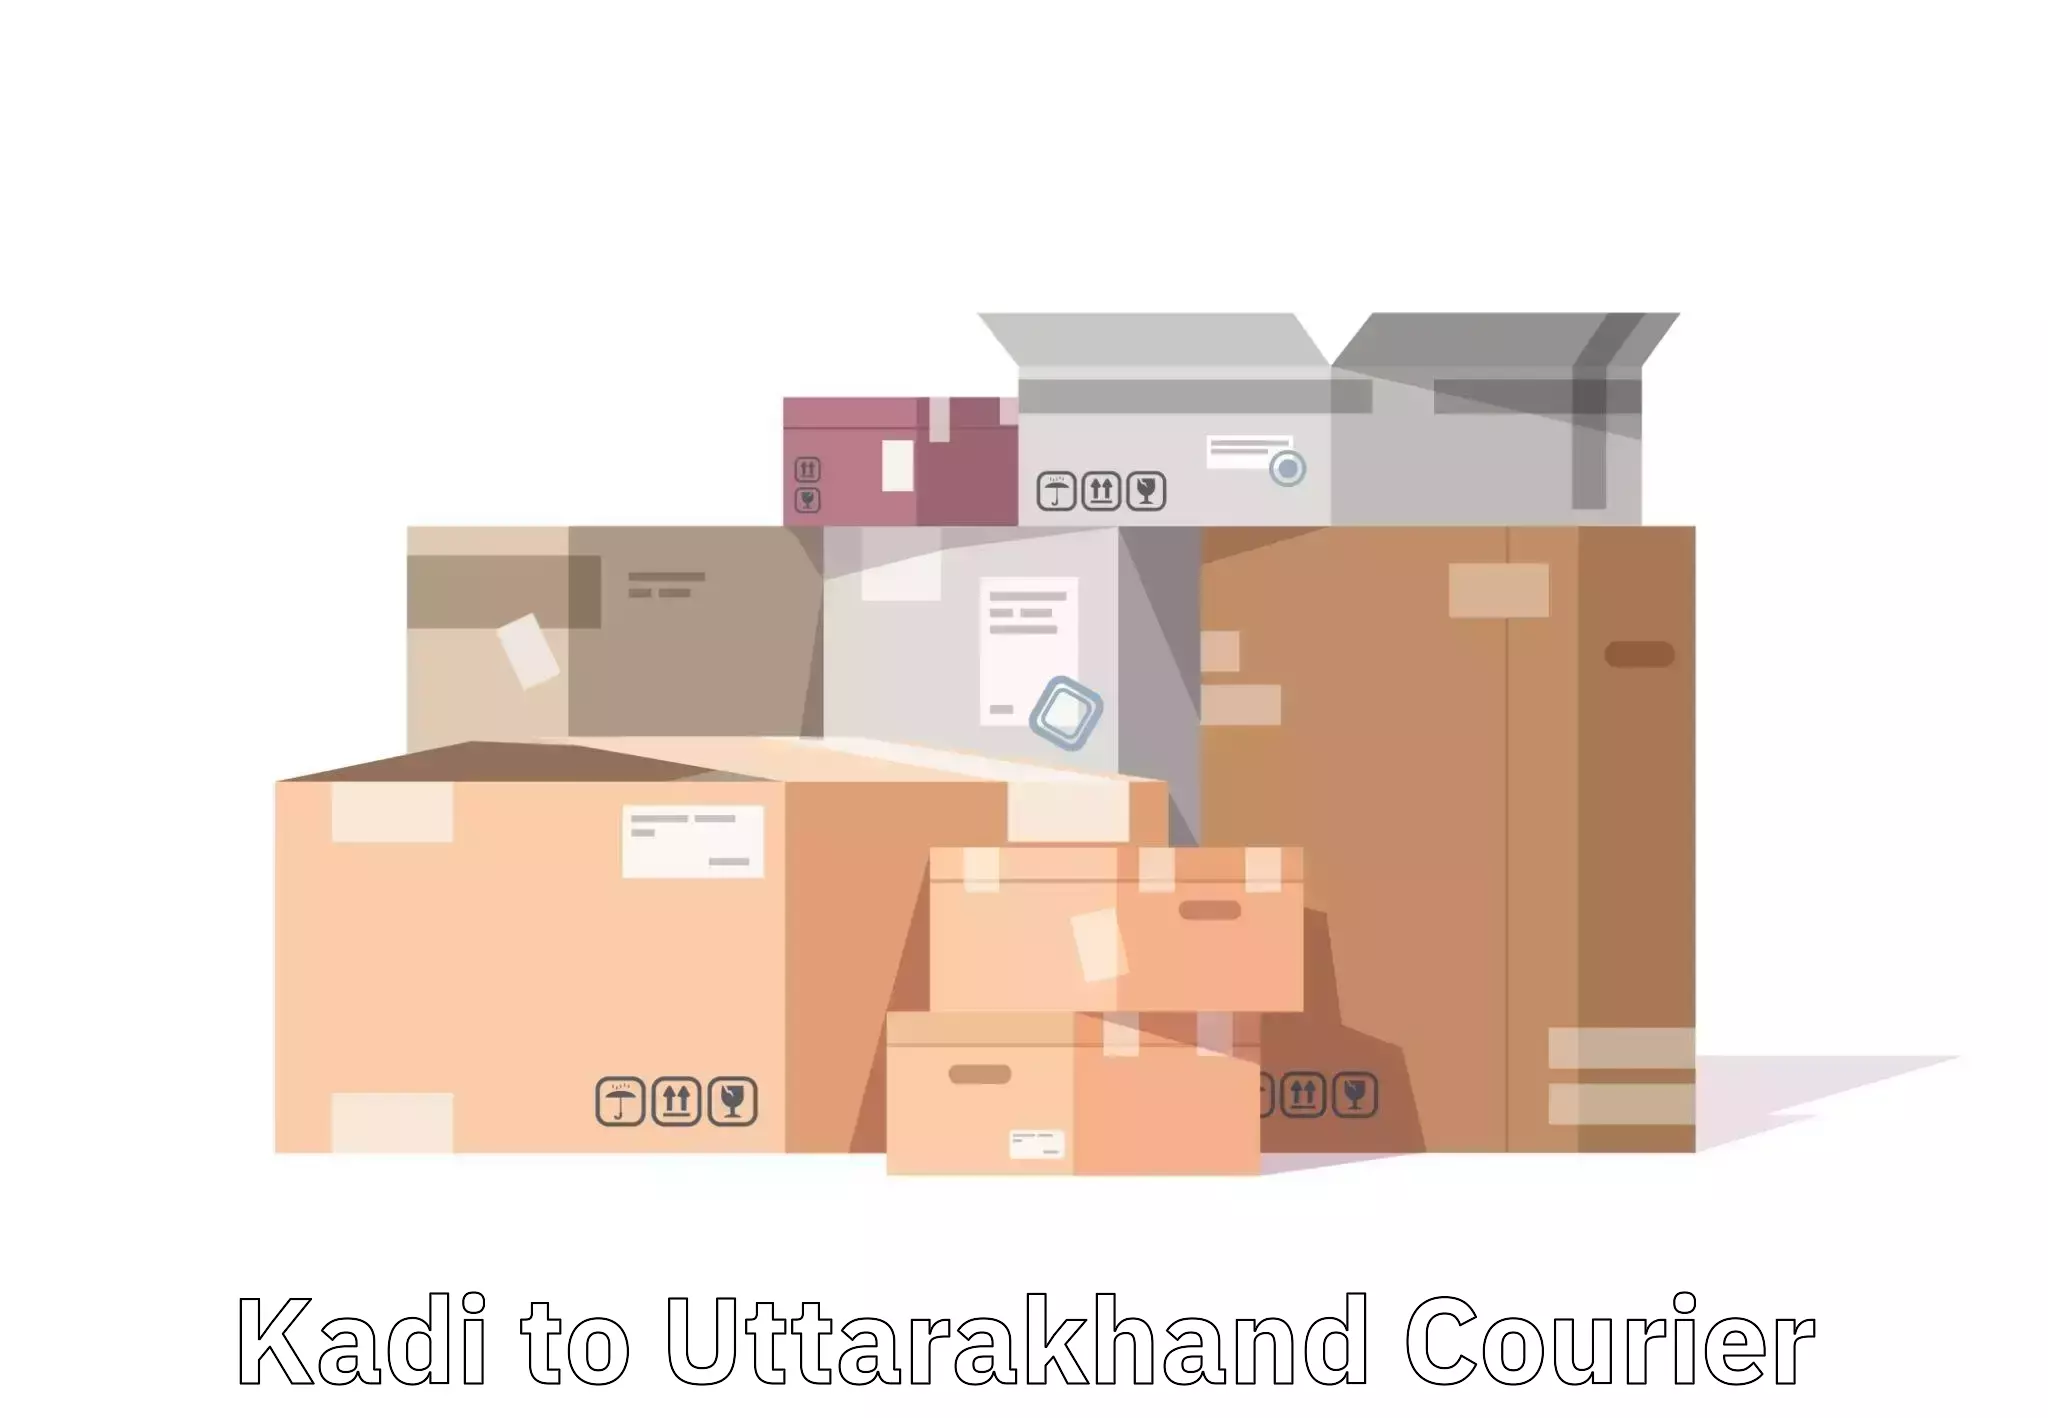 Luggage delivery app Kadi to Uttarakhand